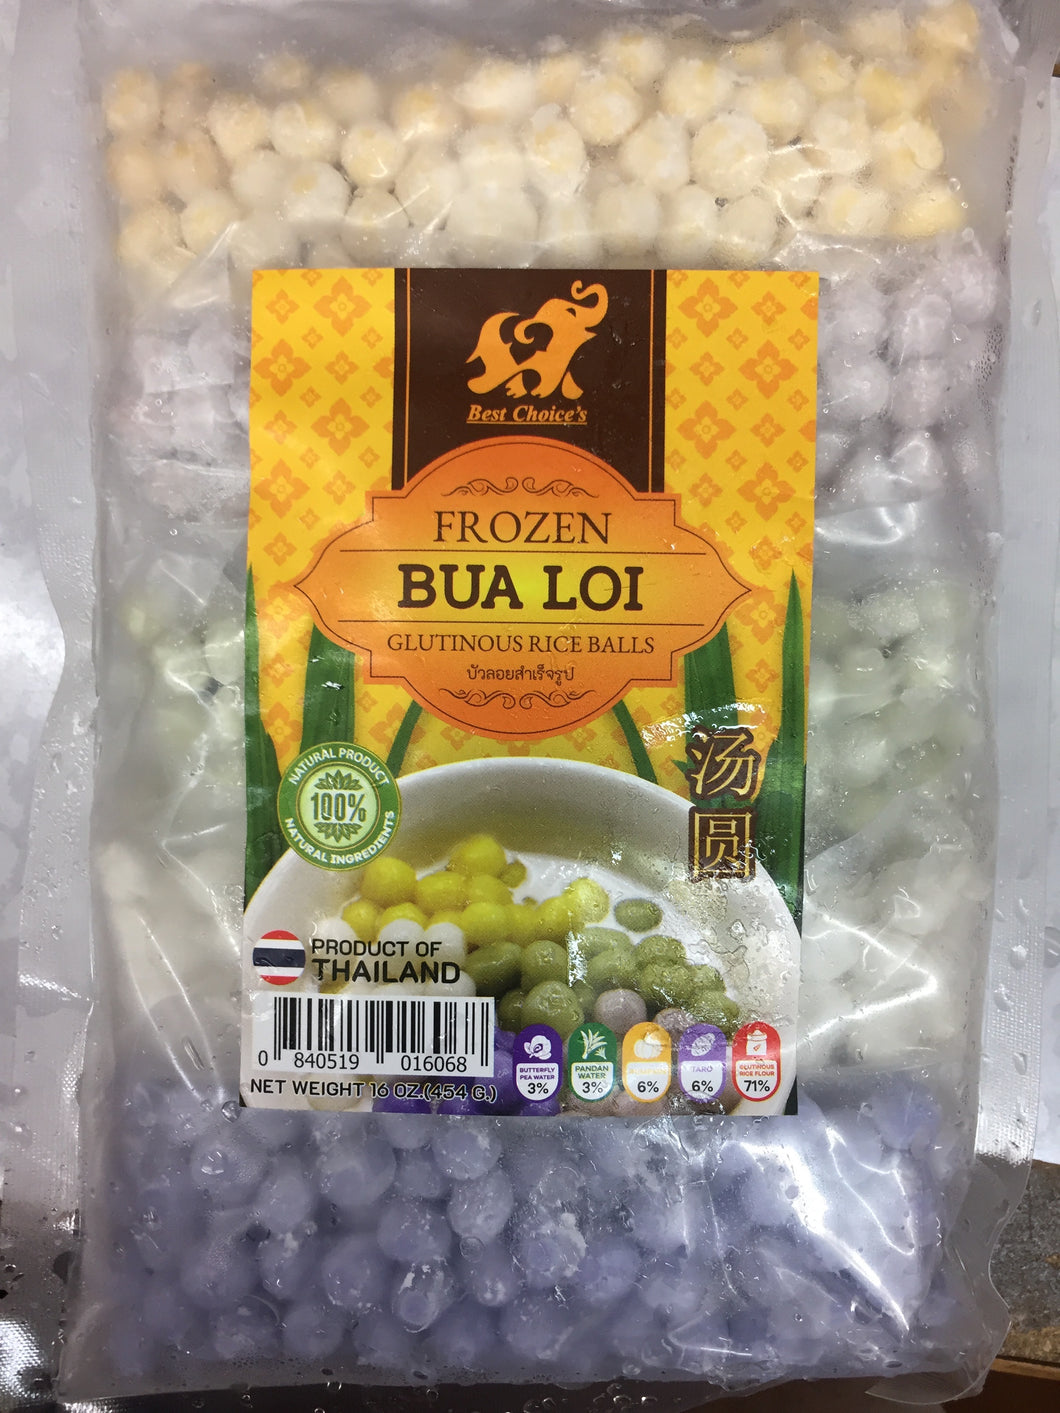 Best's Choice - Frozen Glutinous Rice Balls (Bua Loi) - บัวลอย แช่แข็ง